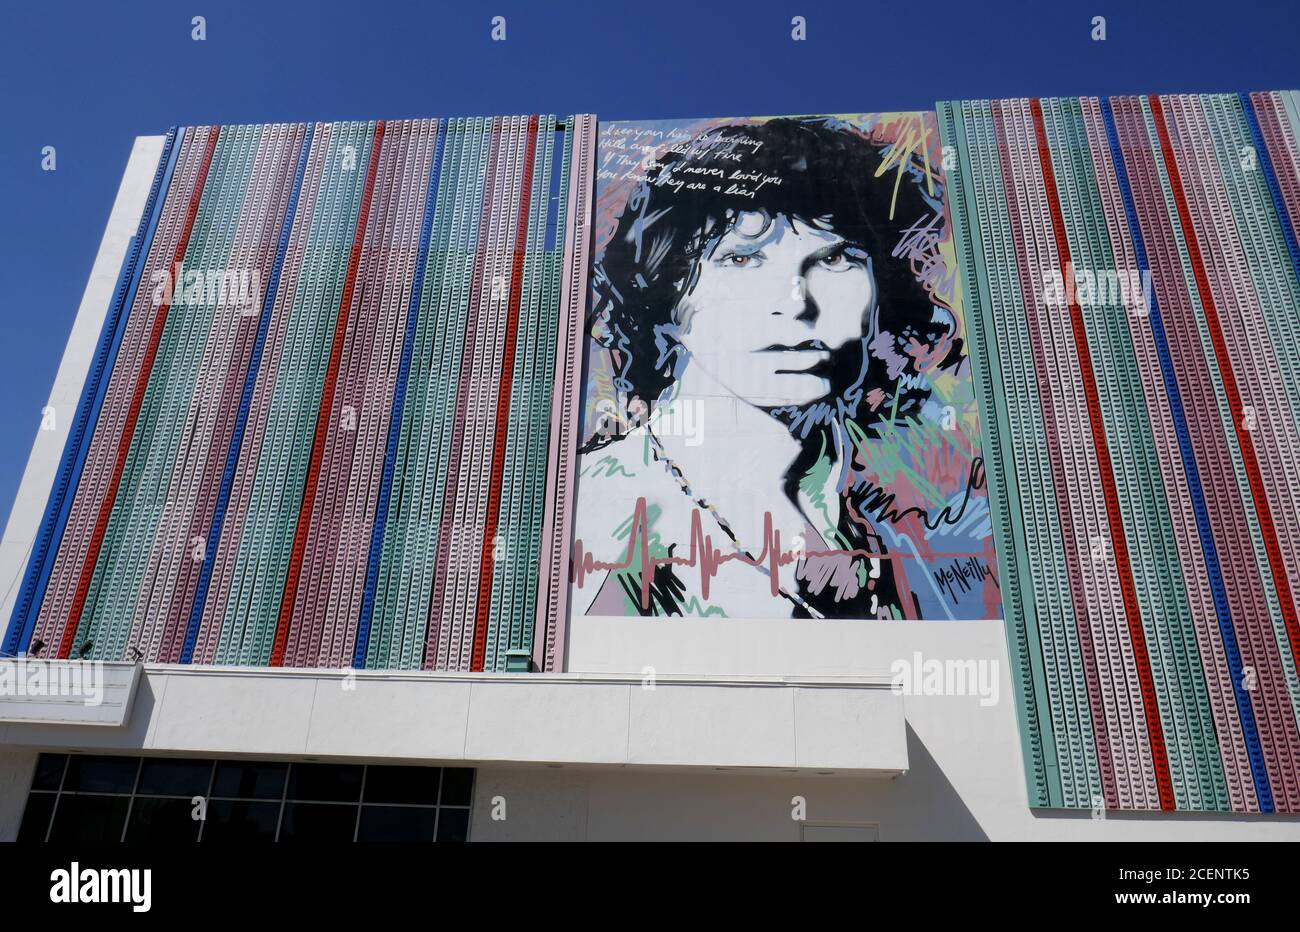 Los Angeles, California, USA 1 settembre 2020 UNA visione generale dell'atmosfera di Jim Morrison The Doors Street Art Mural a Los Angeles, California, USA. Foto di Barry King/Alamy Stock foto Foto Stock